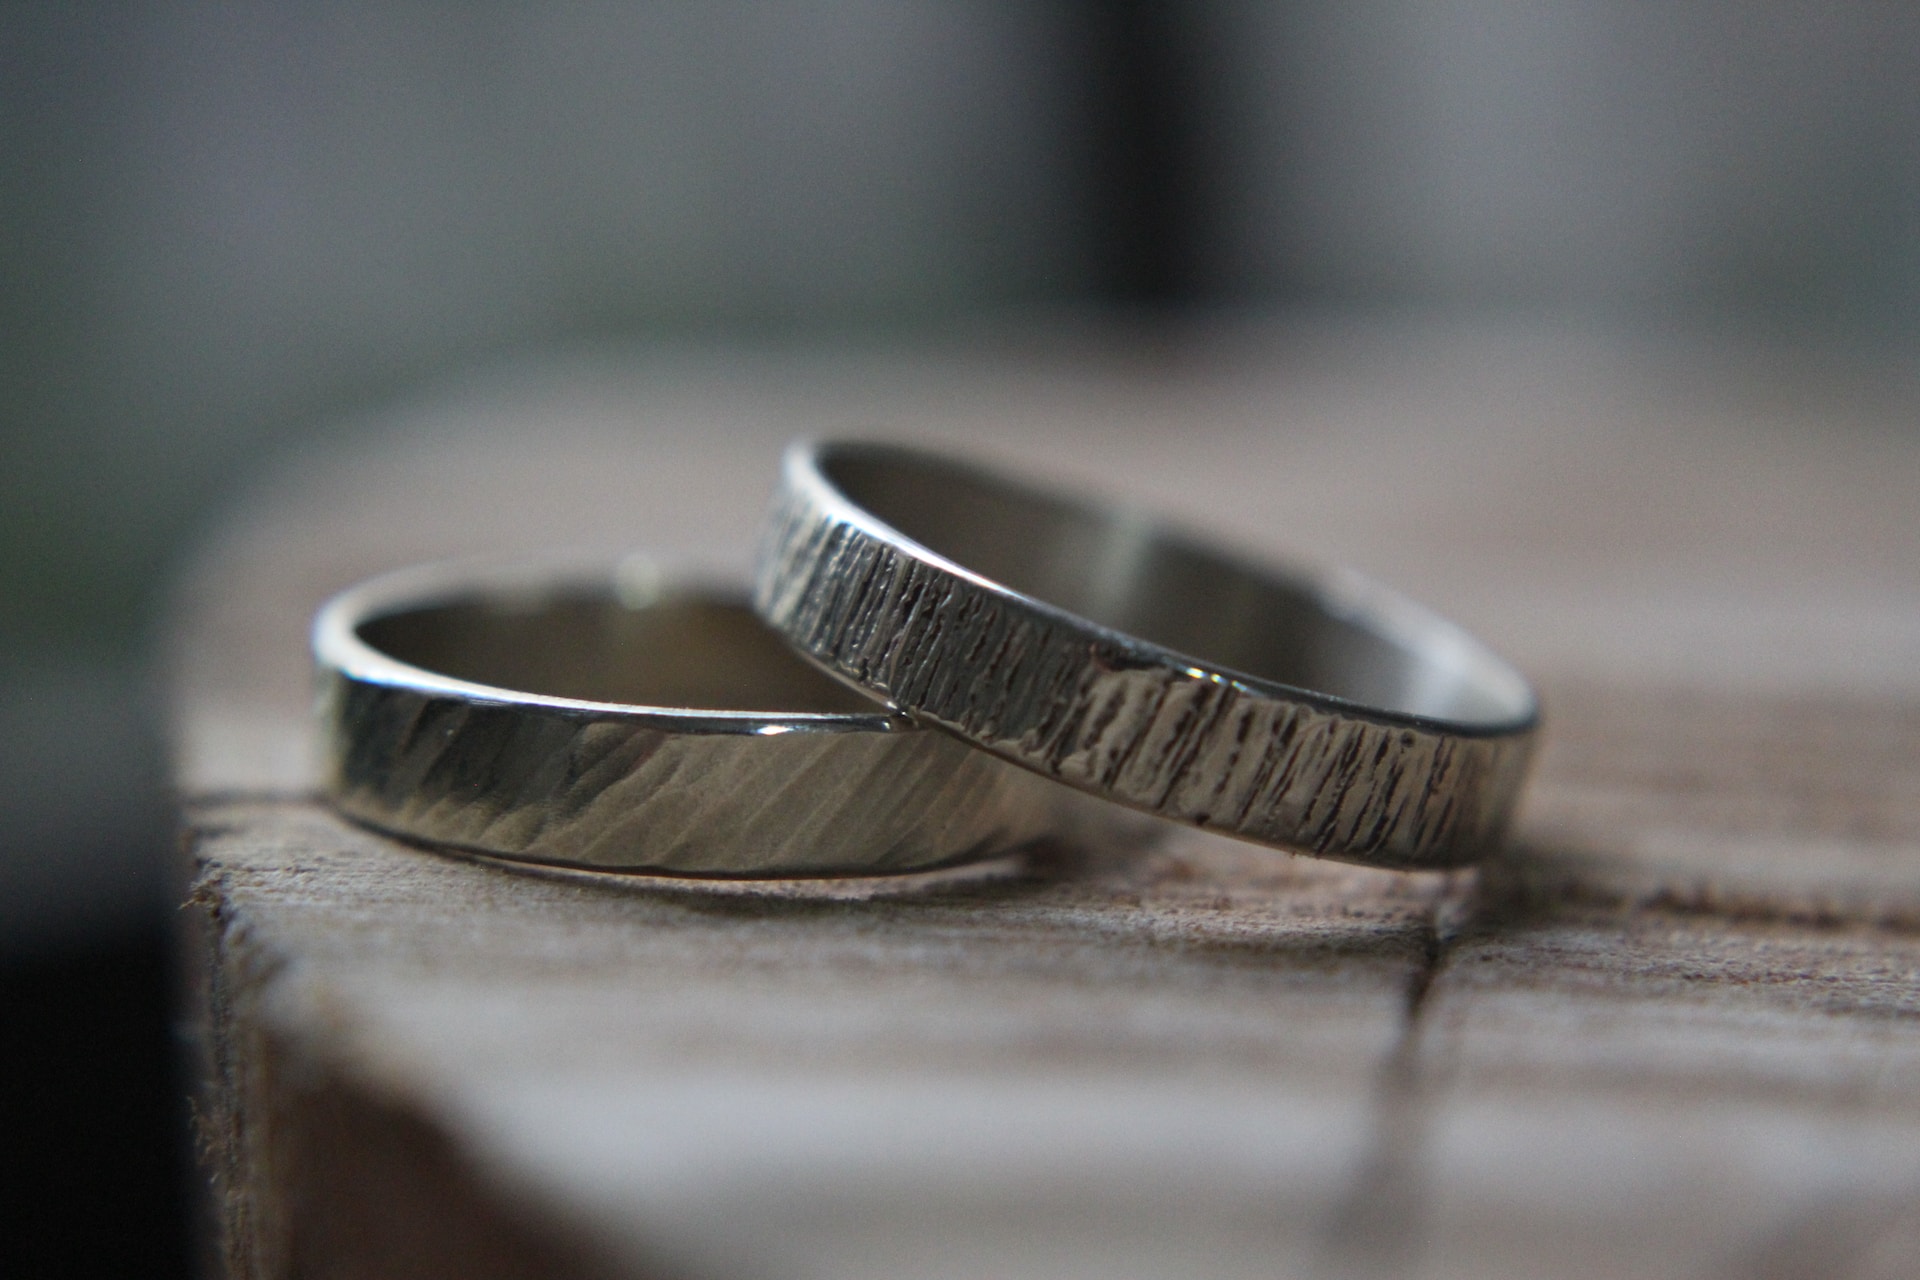 textured wedding rings, rings for weddings 